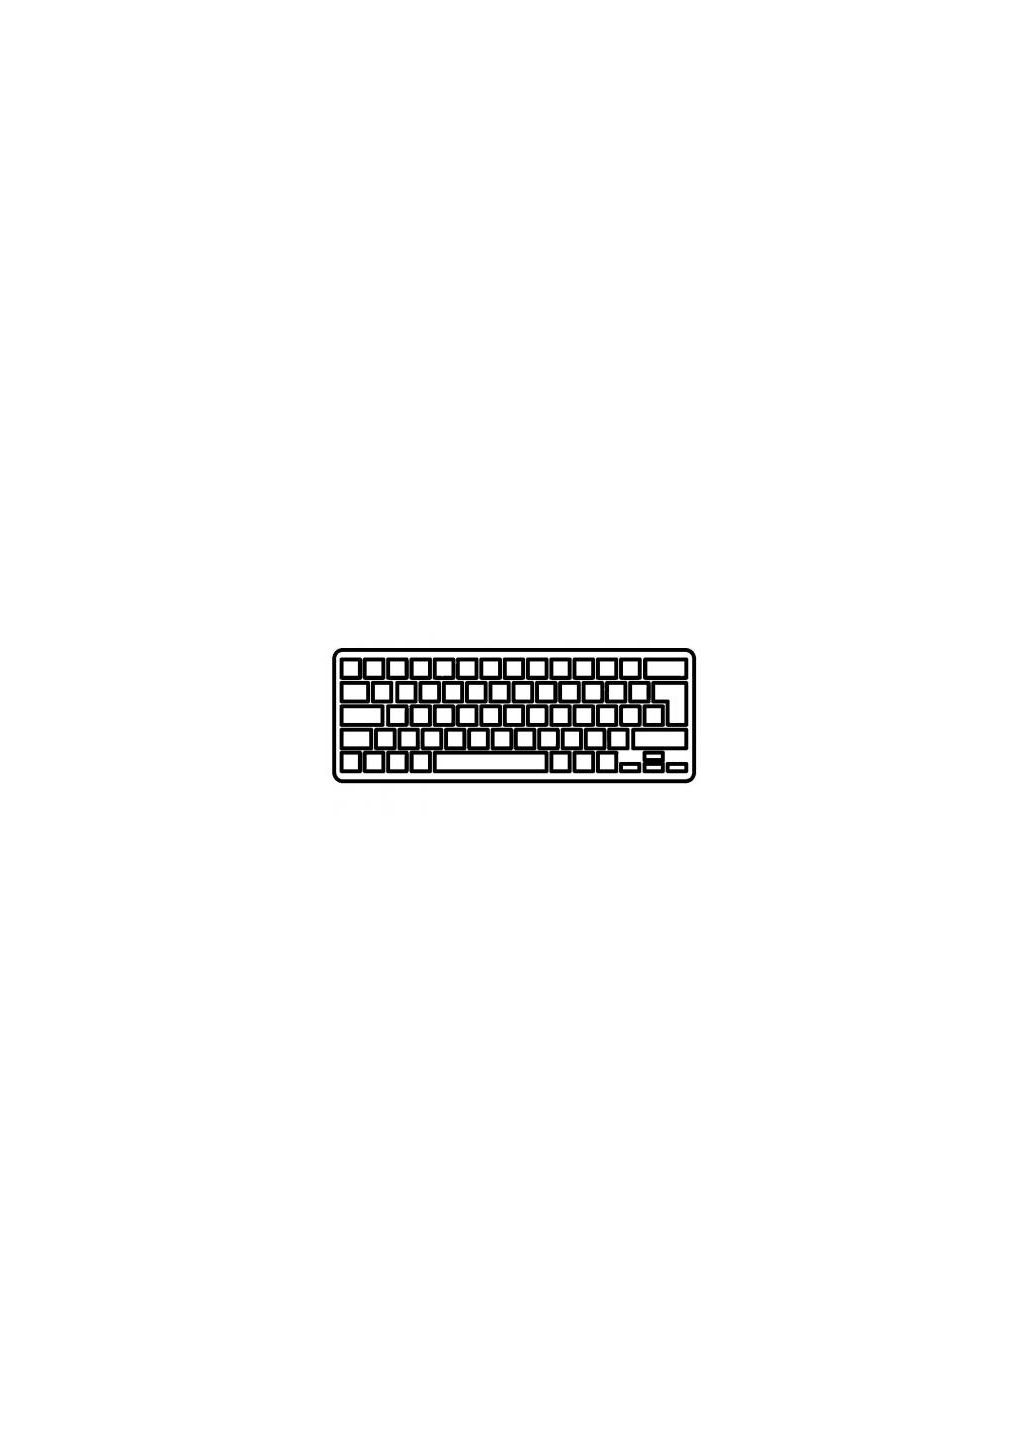 Клавиатура ноутбука (A43288) Asus k40/p81/x8/x8ac/x8ae/x8ic/x8a/x8w series черная ua (276706901)